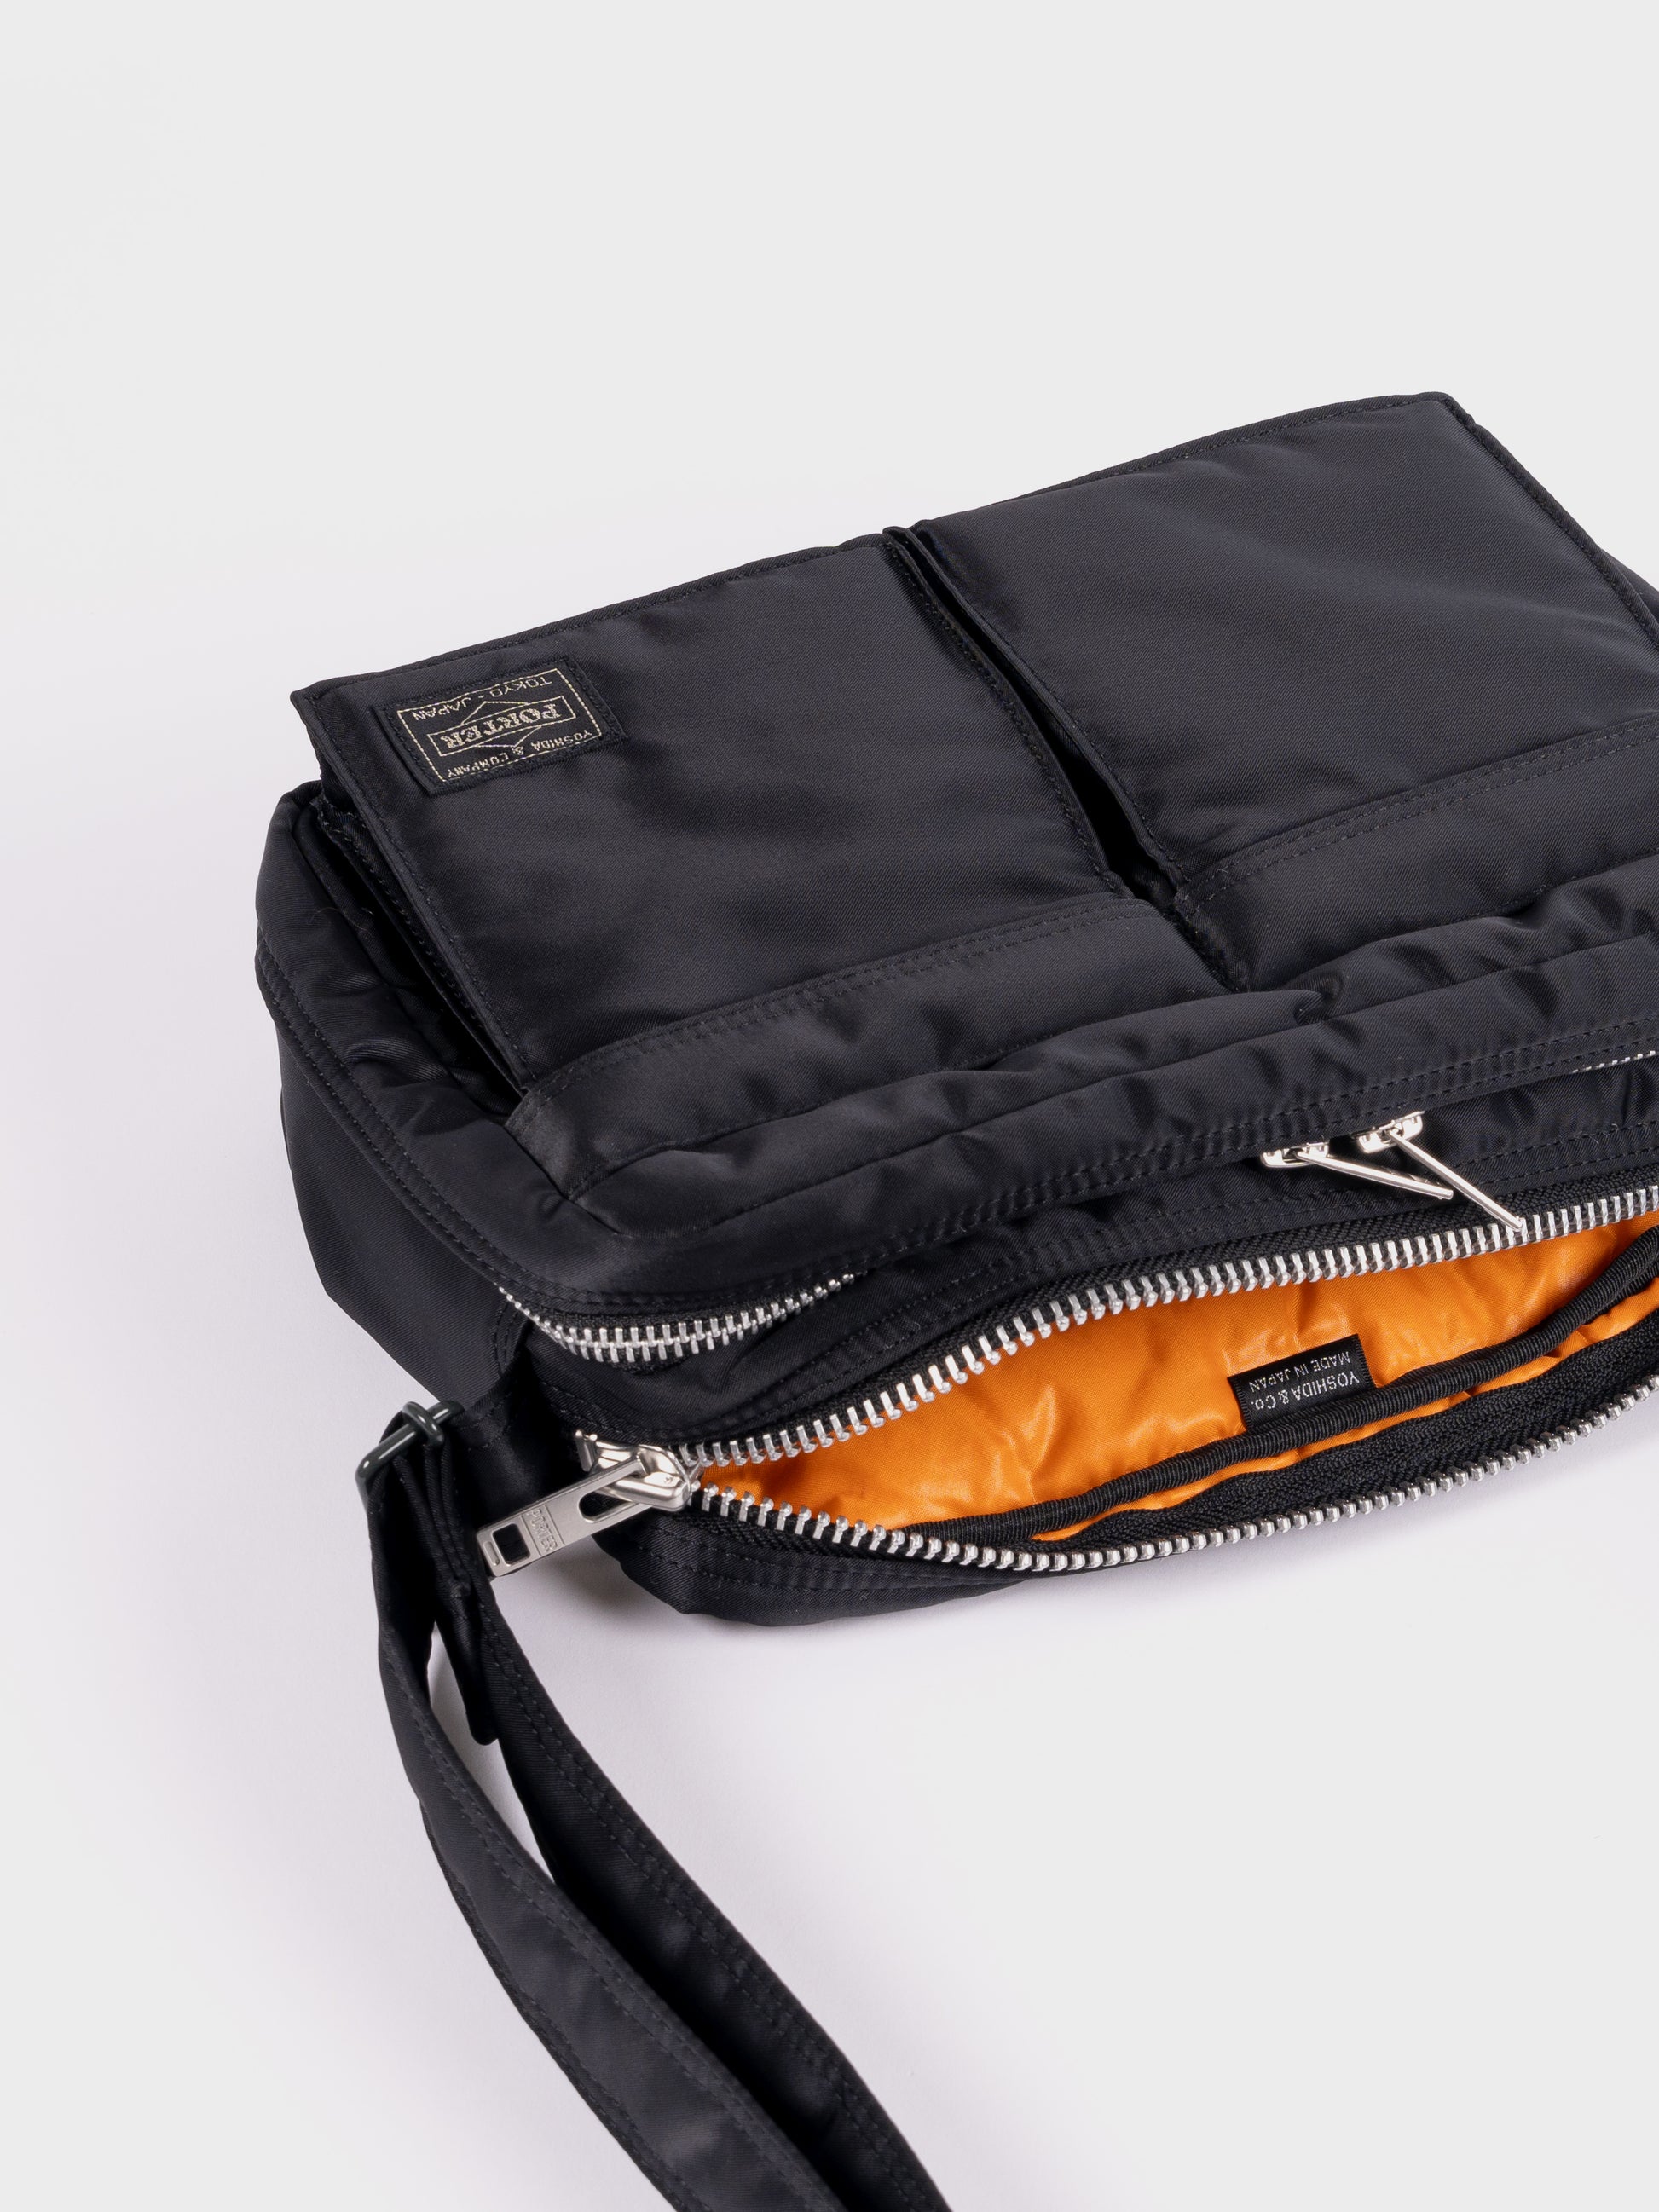 Porter-Yoshida & Co Tanker Shoulder Bag S - Black